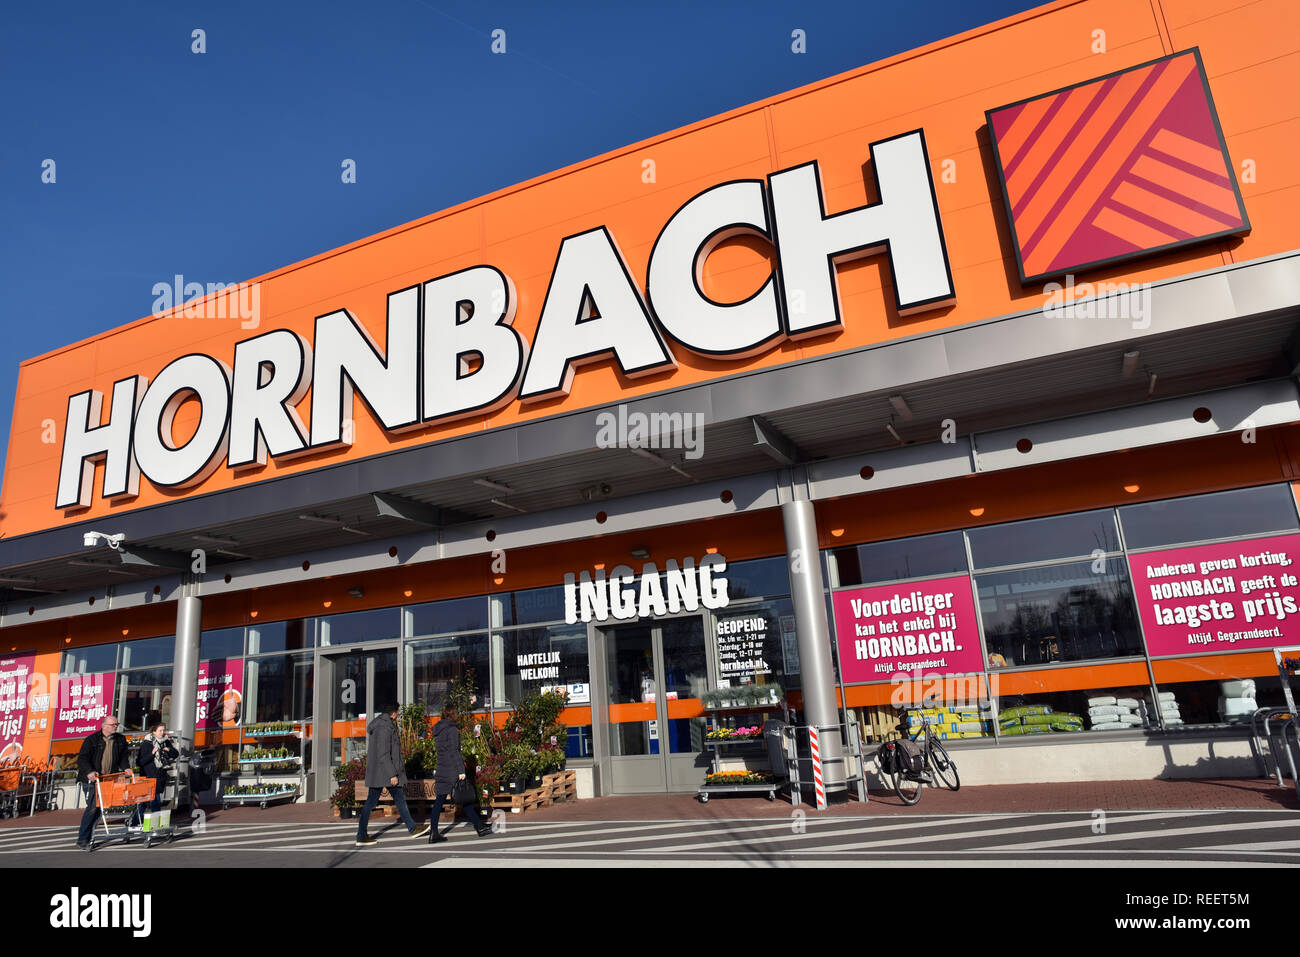 Facade of a Hornbach hardware store Stock Photo